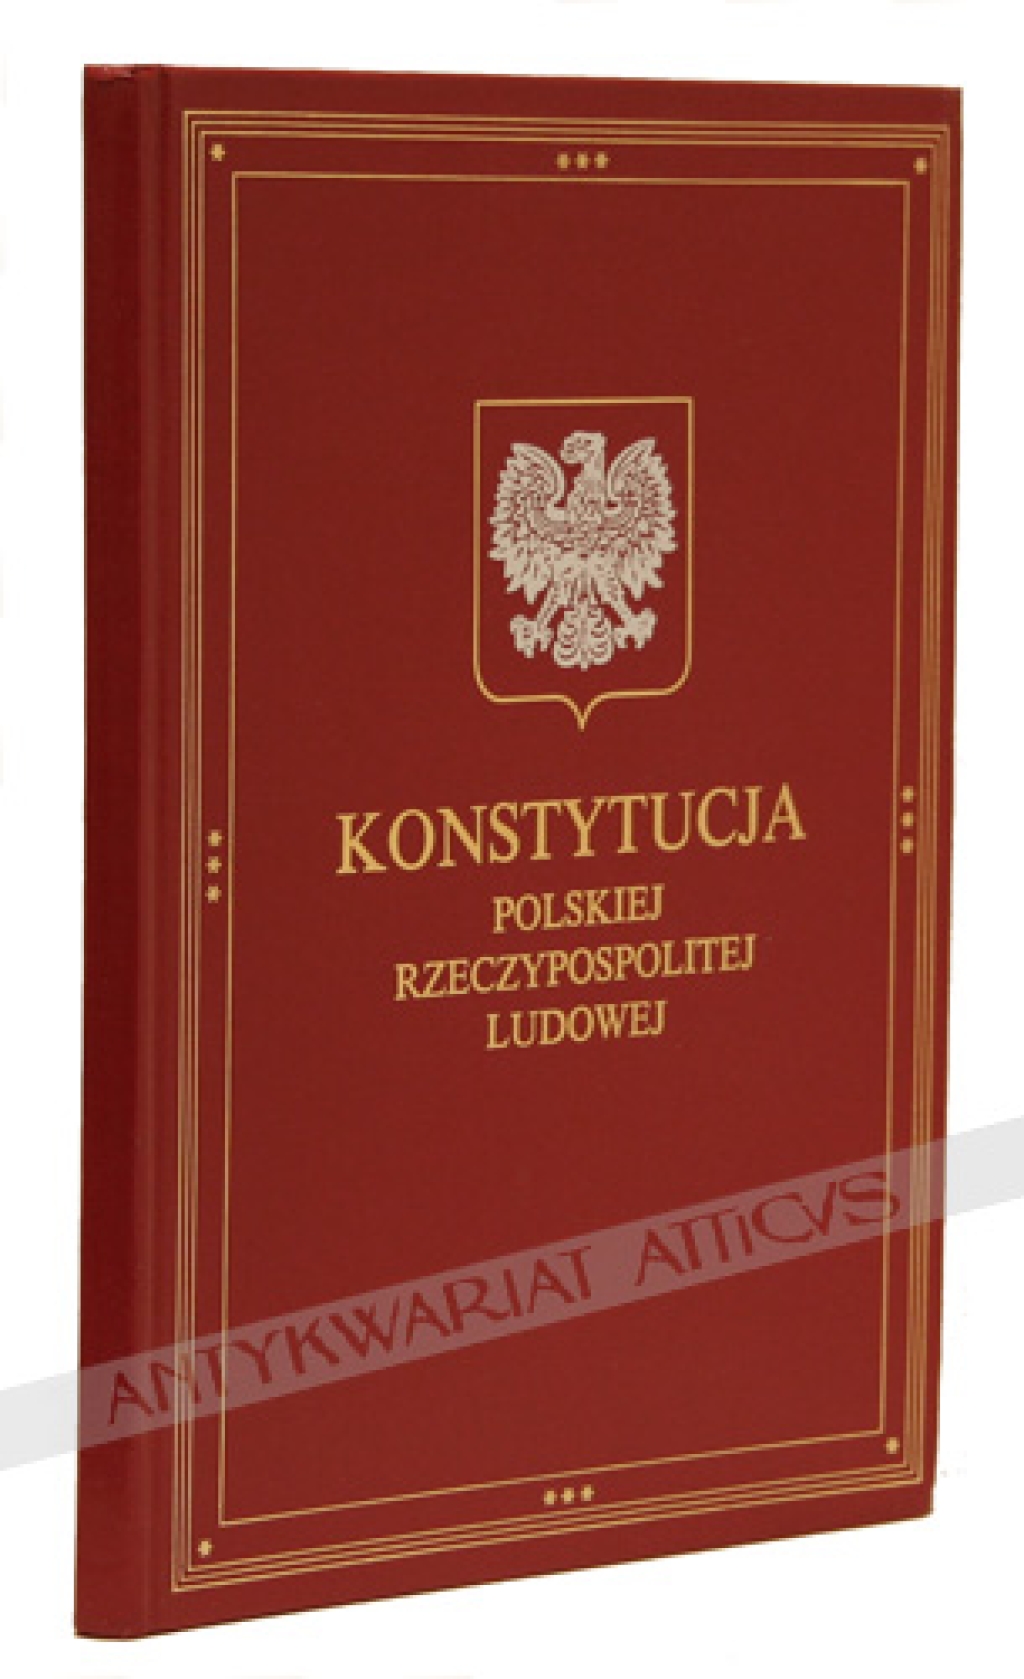 Konstytucja Polskiej Rzeczypospolitej Ludowej uchwalona przez Sejm Ustawodawczy w dniu 22 lipca 1952 r.